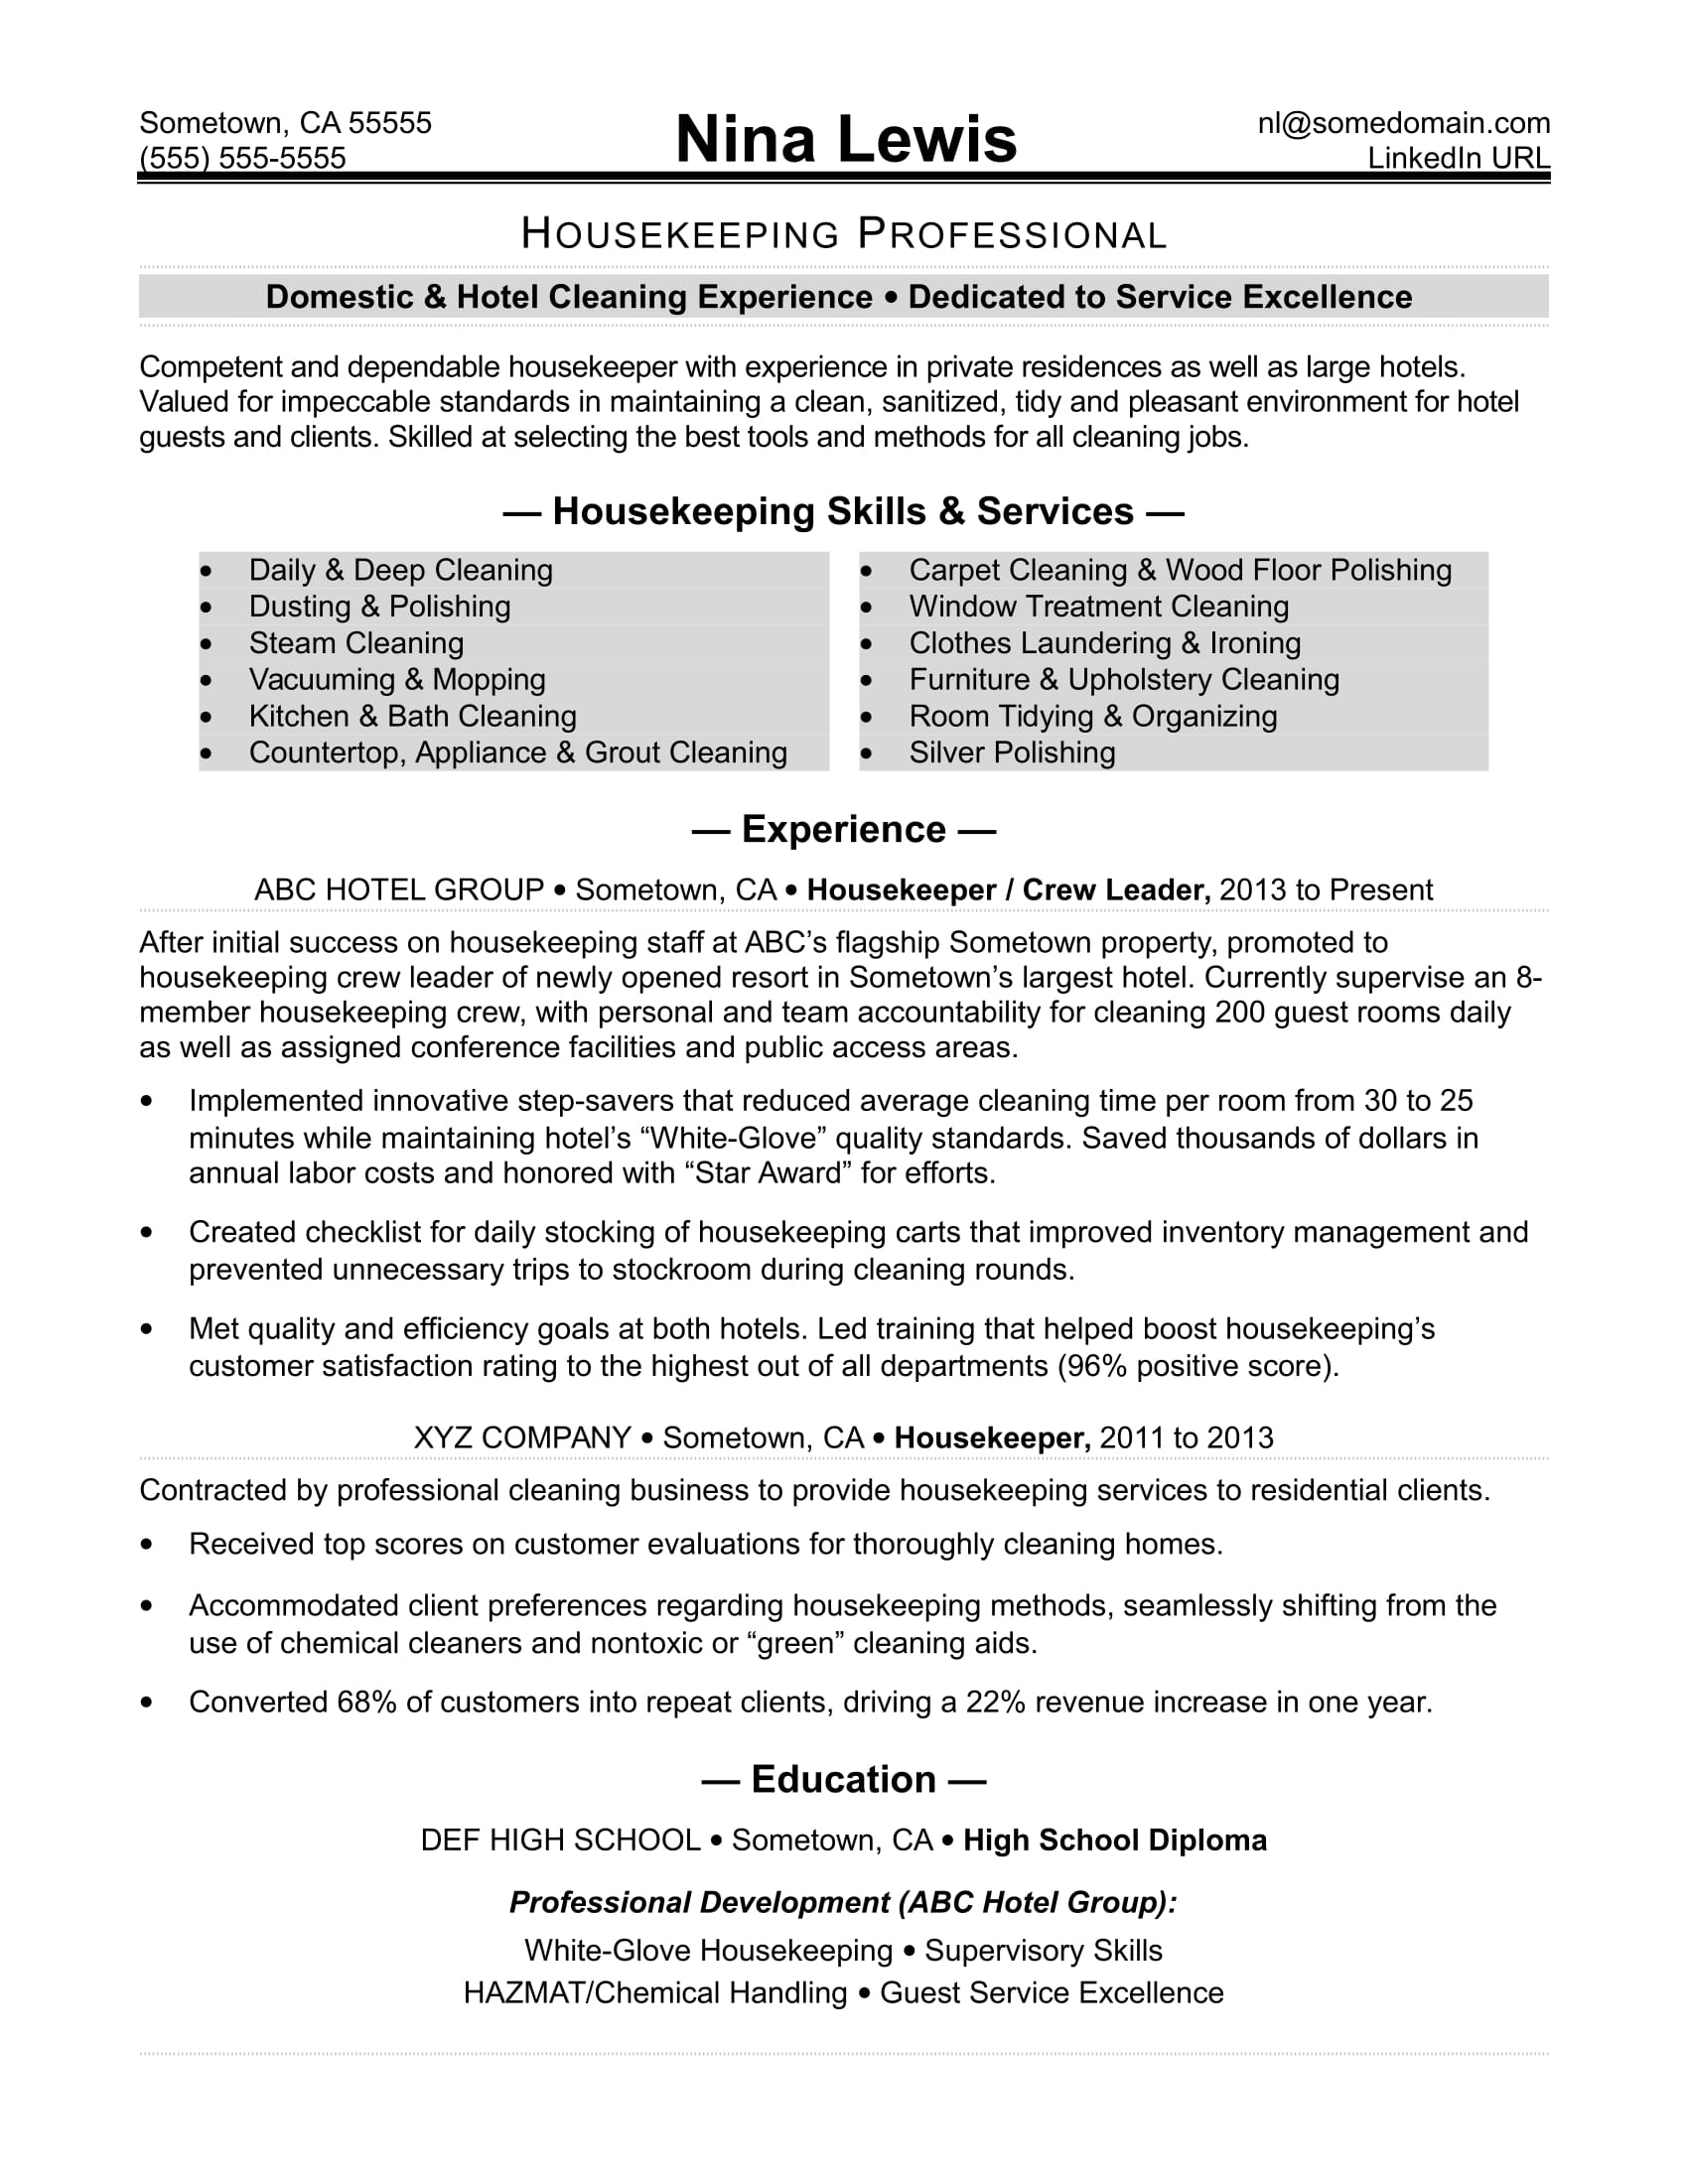 Housekeeping Resume Sample | Monster.com